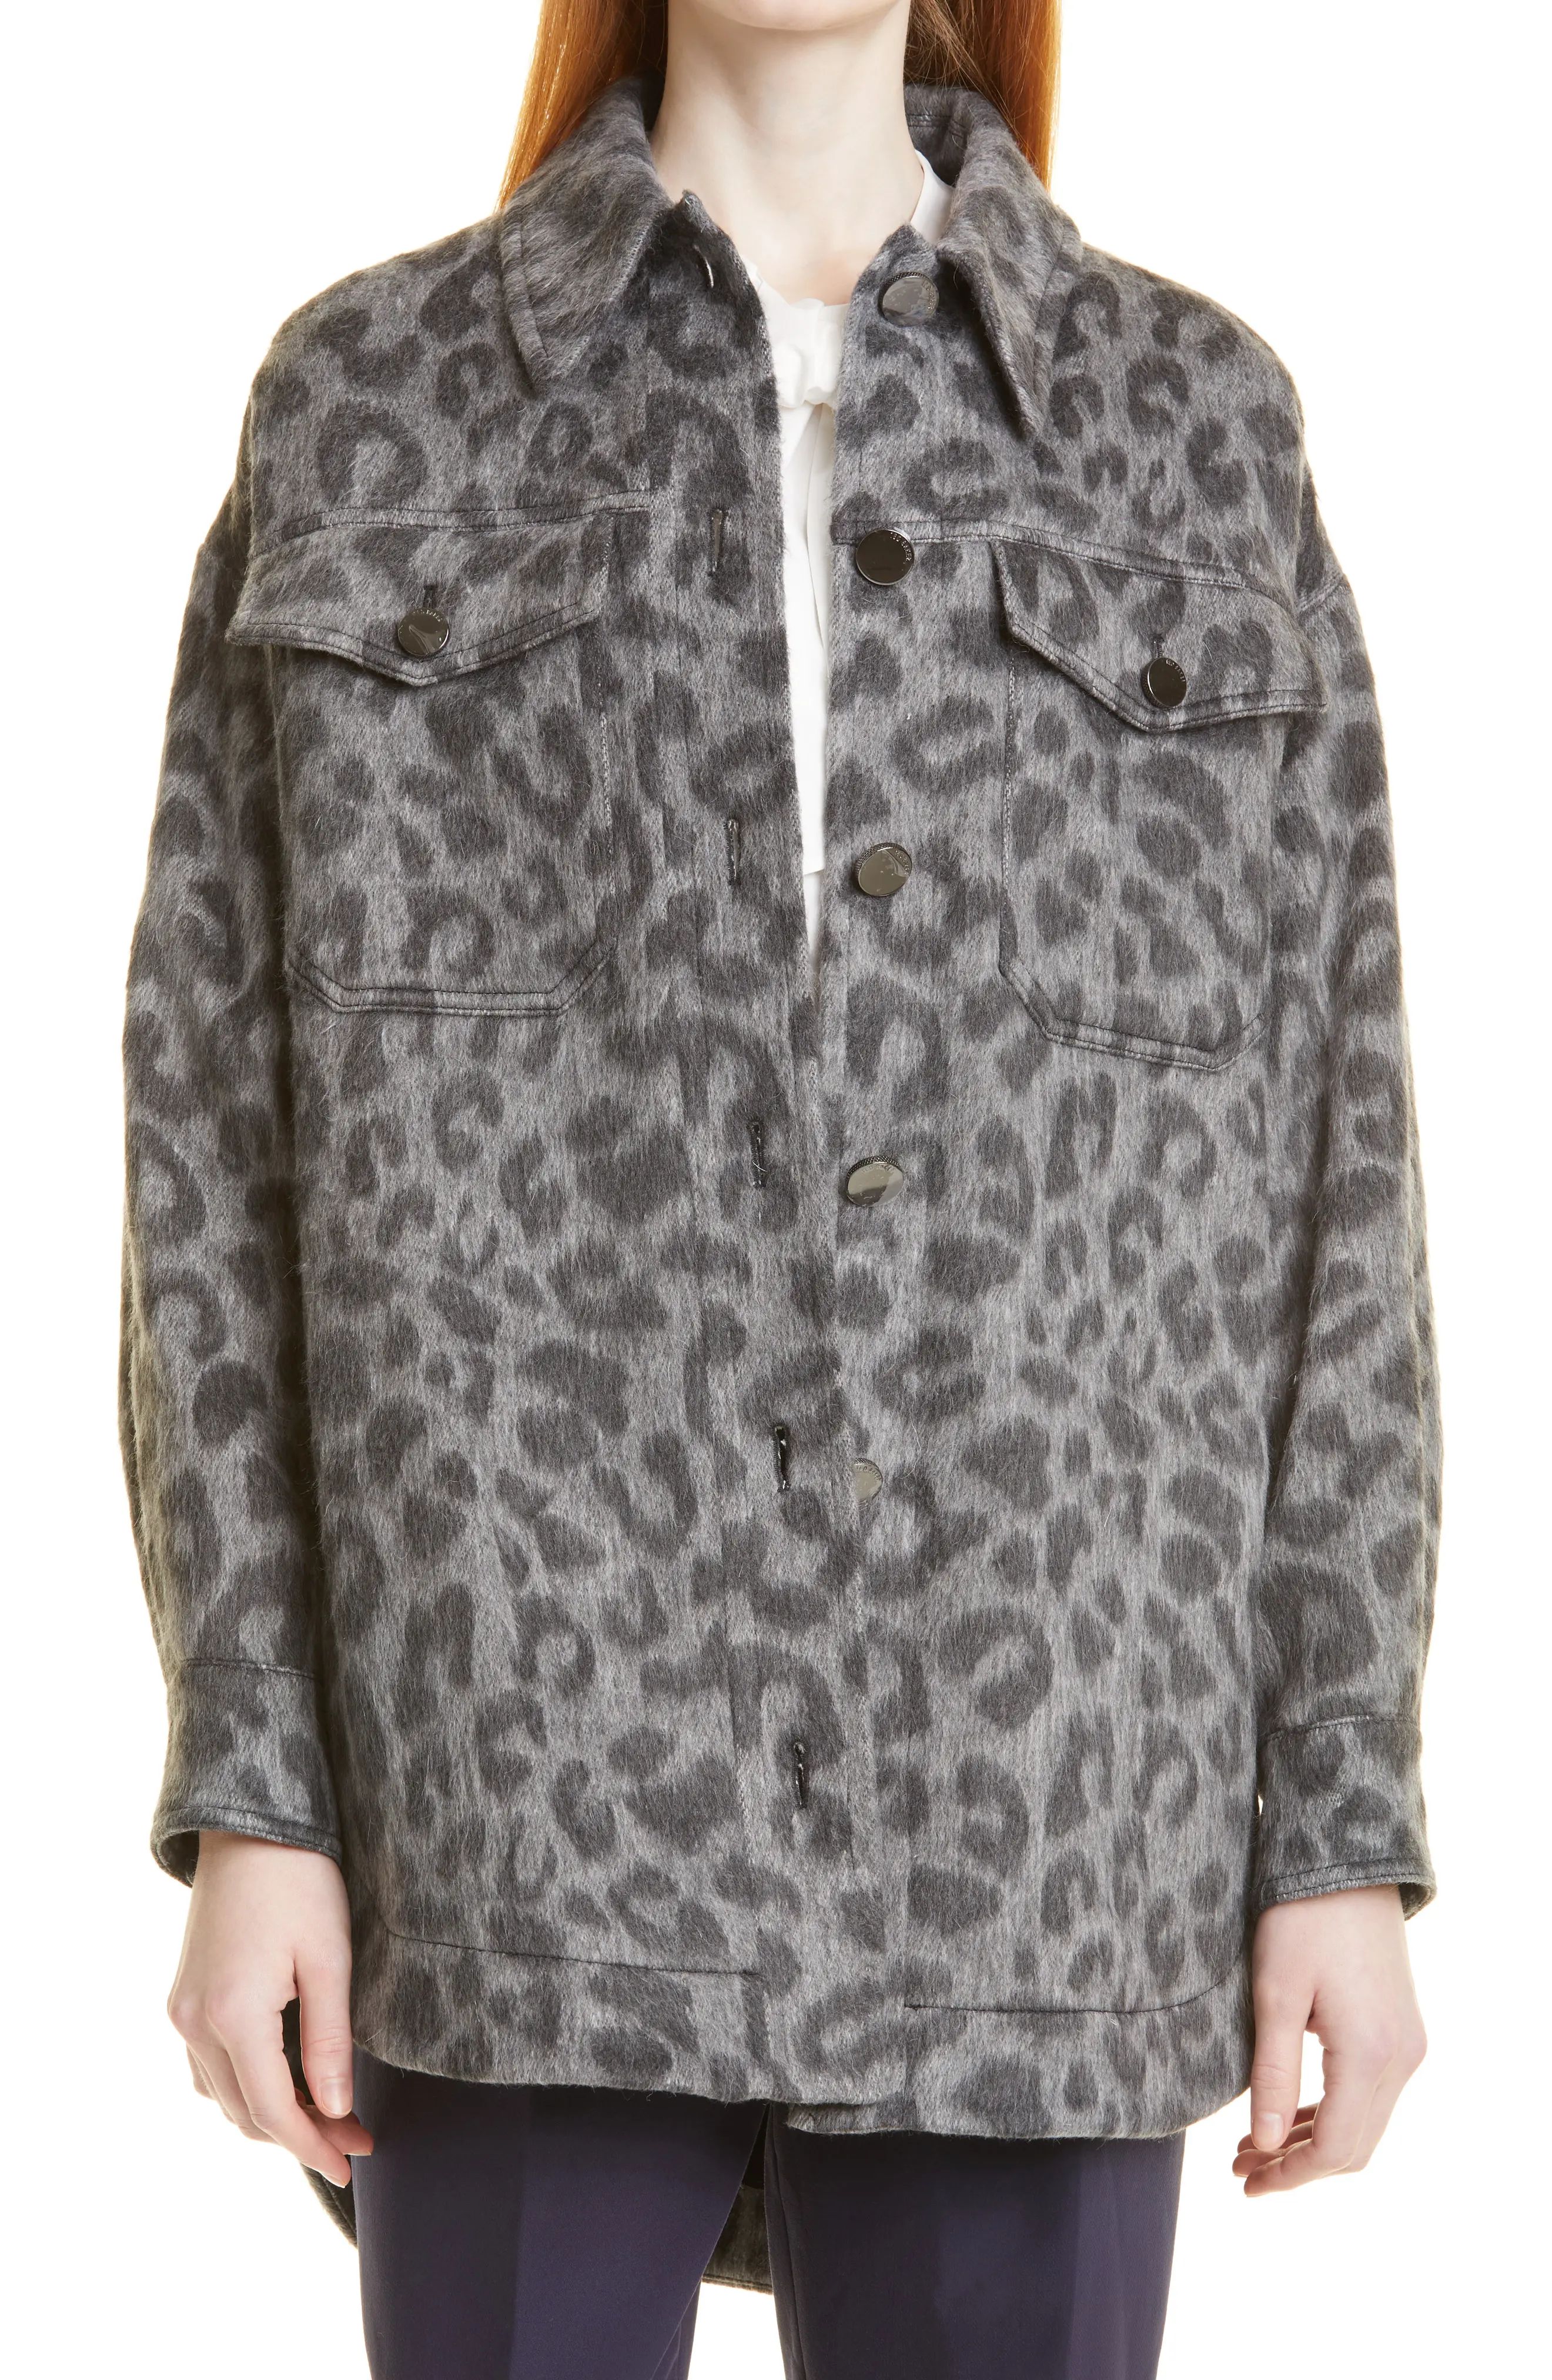 Ted Baker London Ebrill Brushed Leopard Print Shirt Jacket, Size 6 in Dark Grey at Nordstrom | Nordstrom